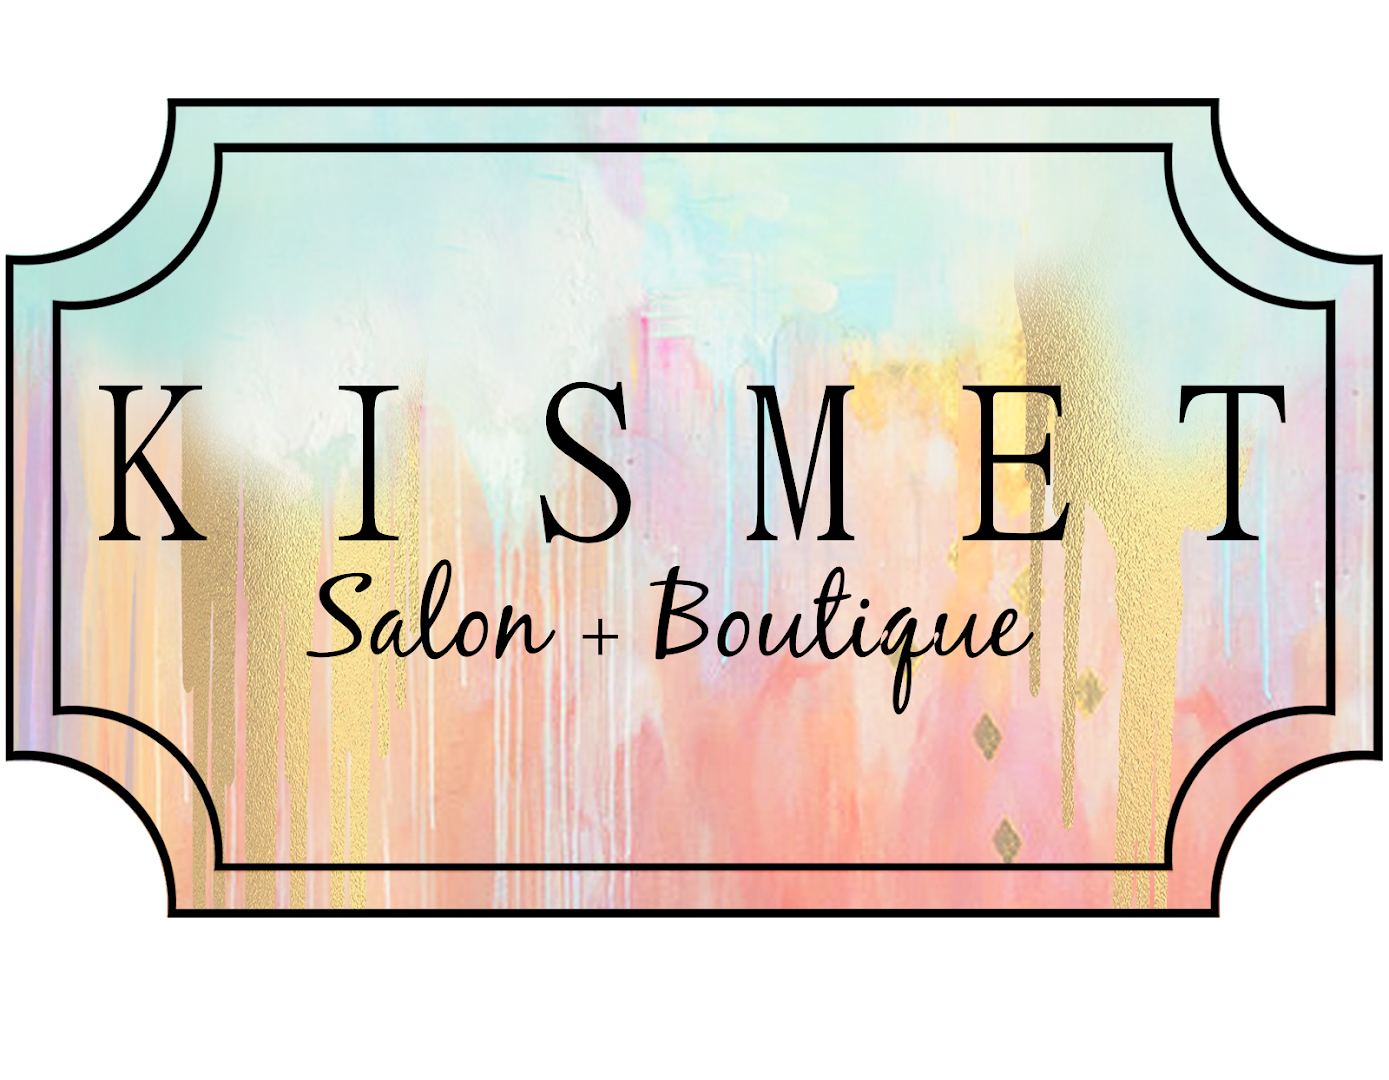 Kismet Salon + Boutique